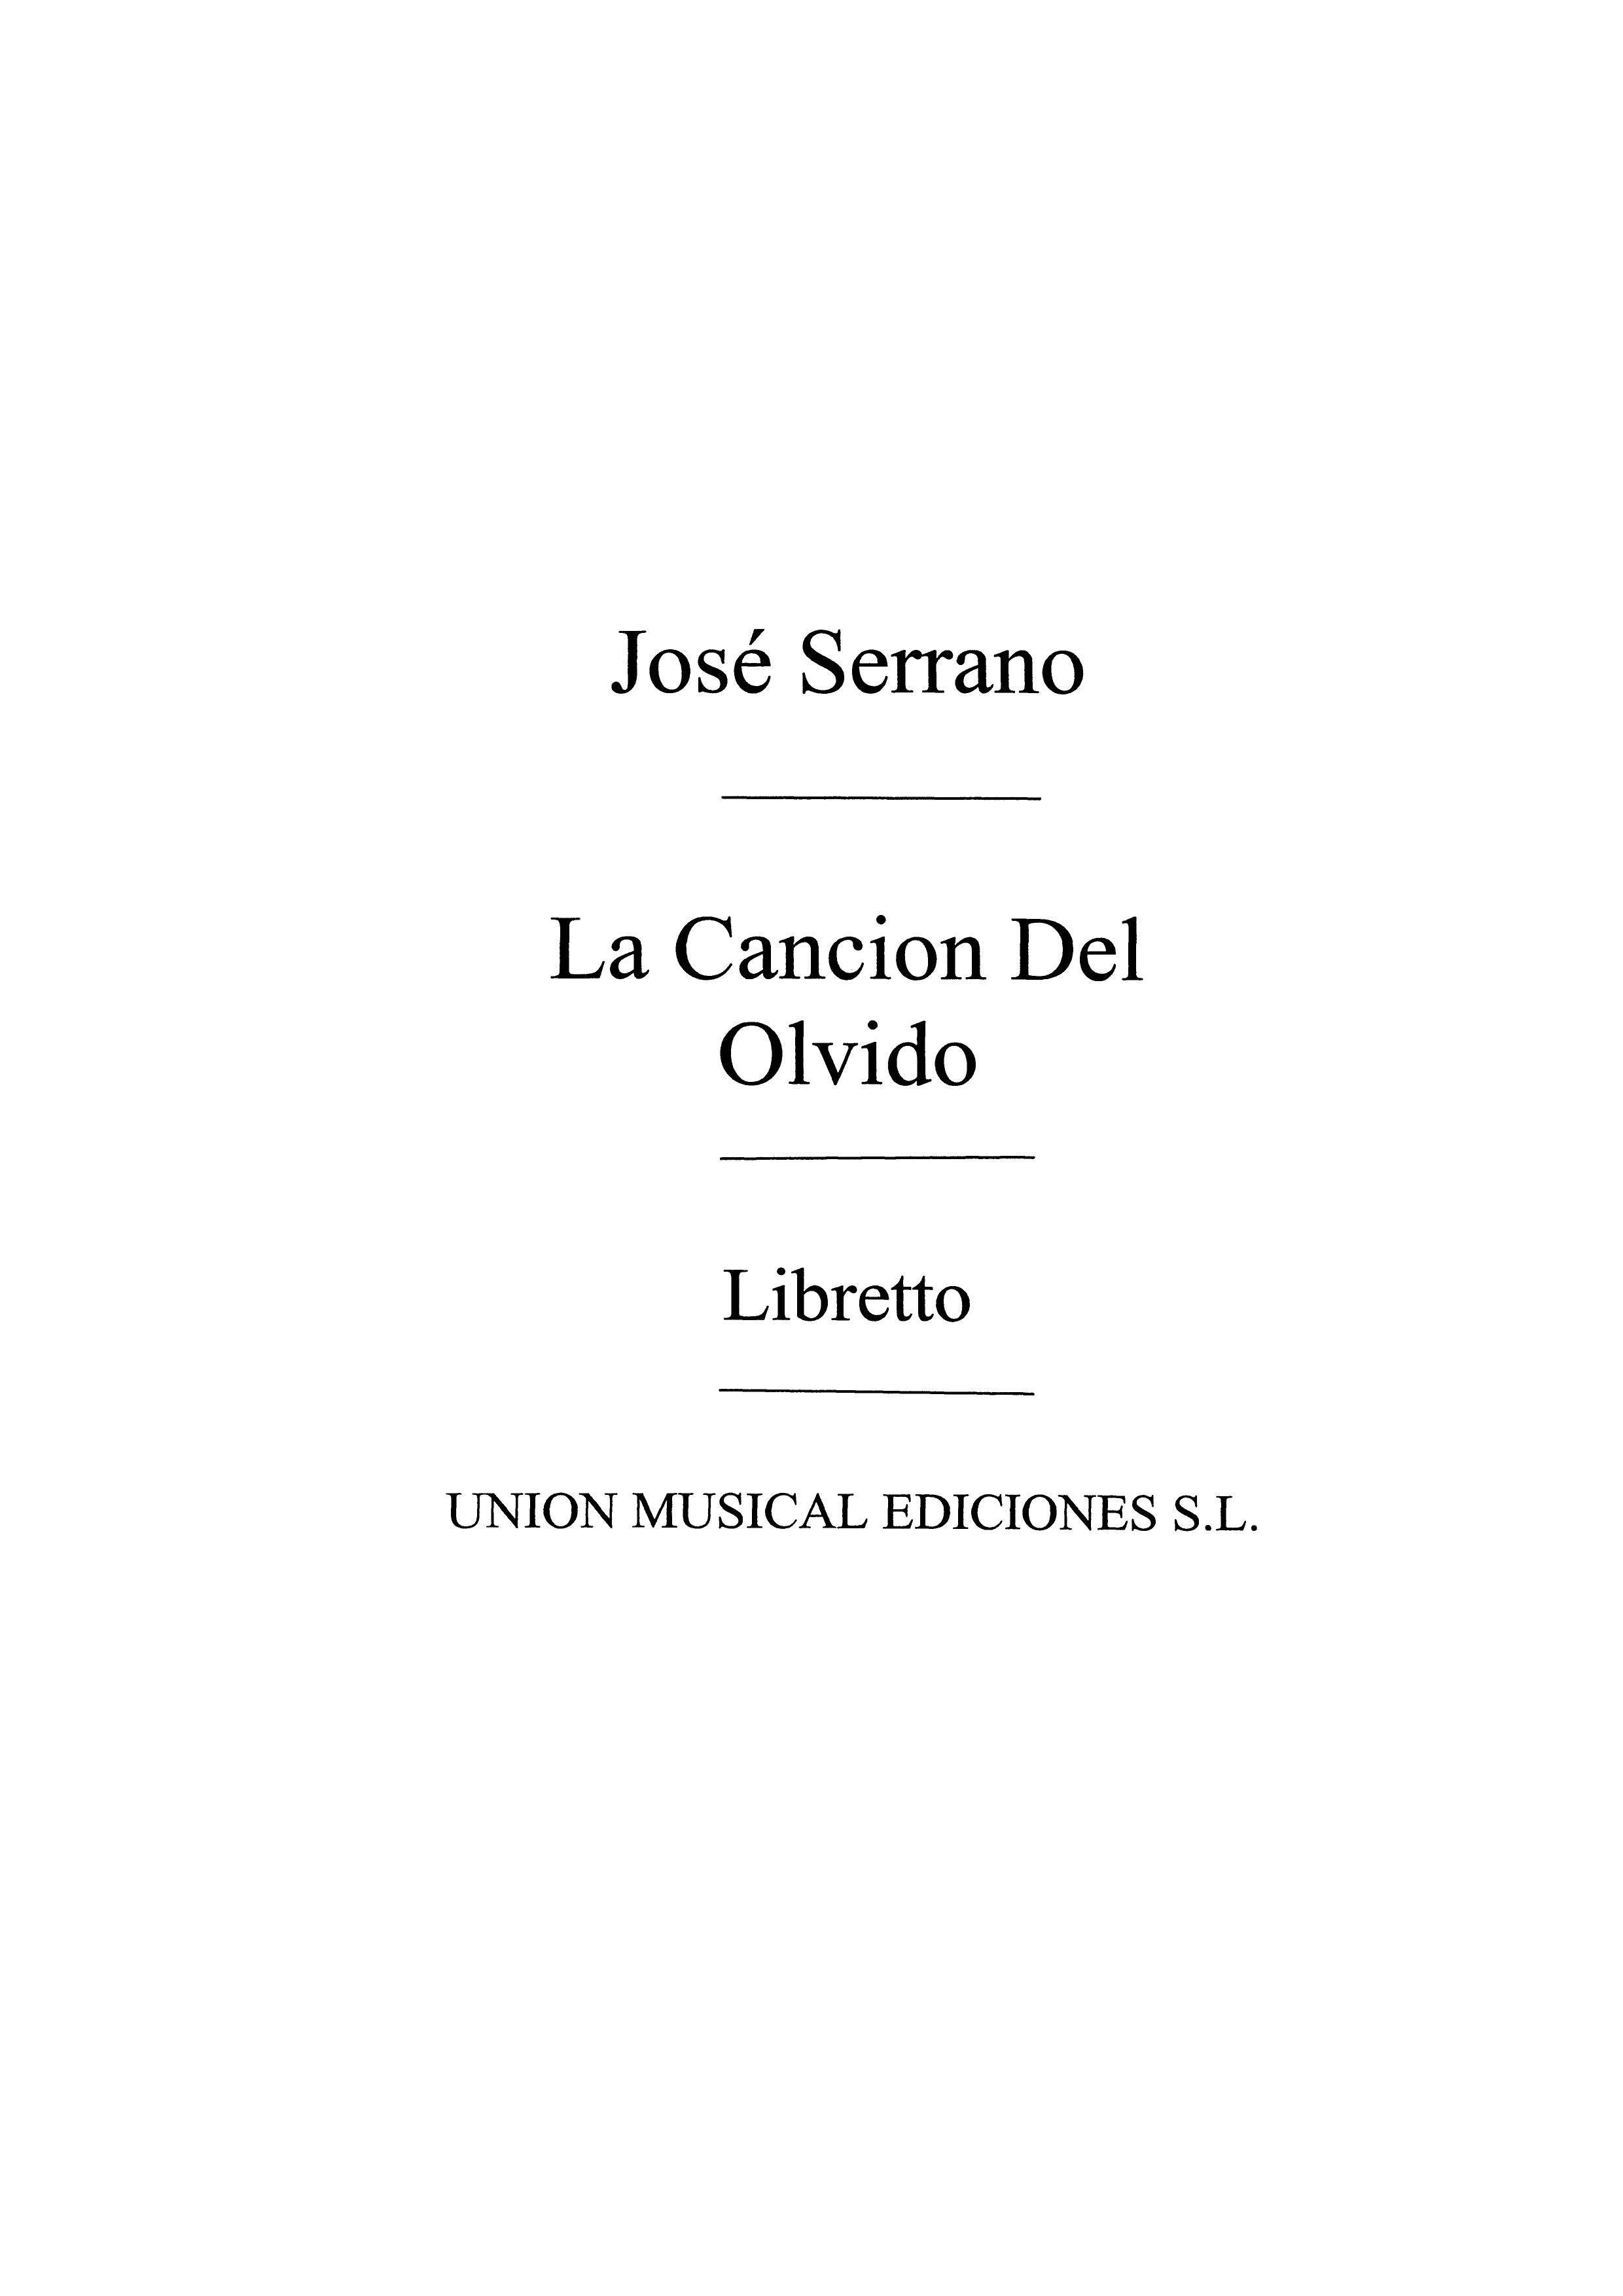 Jose Serrano: La Cancion Del Olvido (Libreto): Opera: Instrumental Work